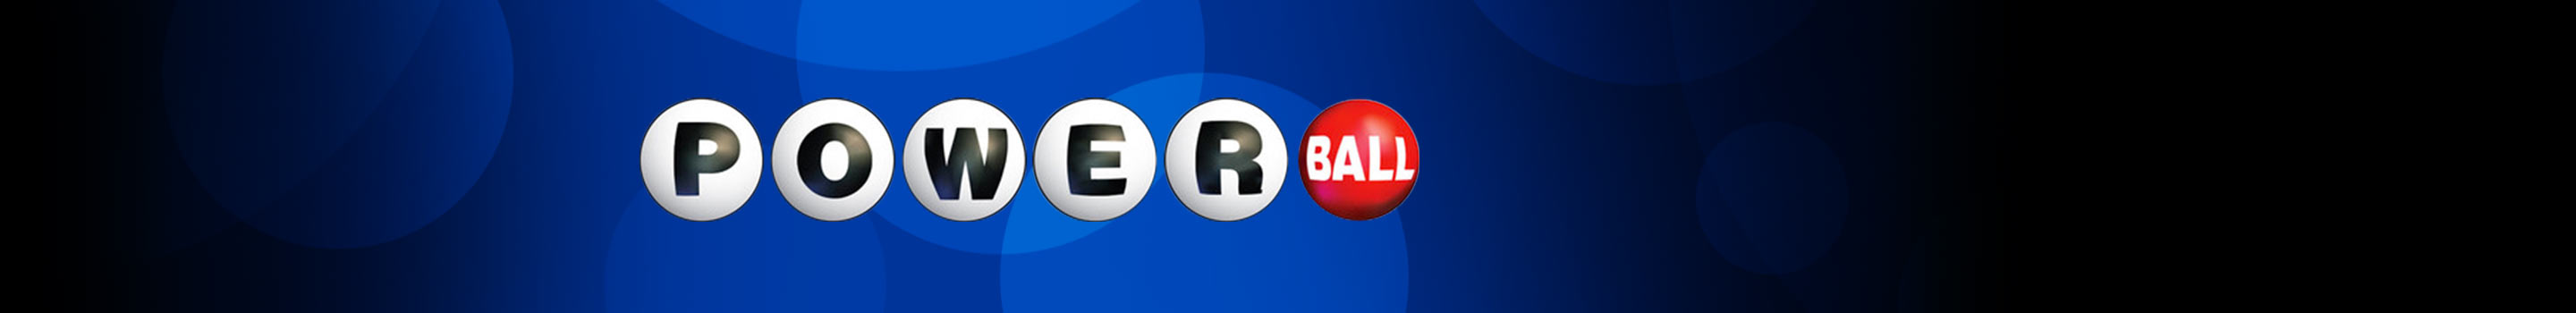 Powerball – największa loteria na świecie